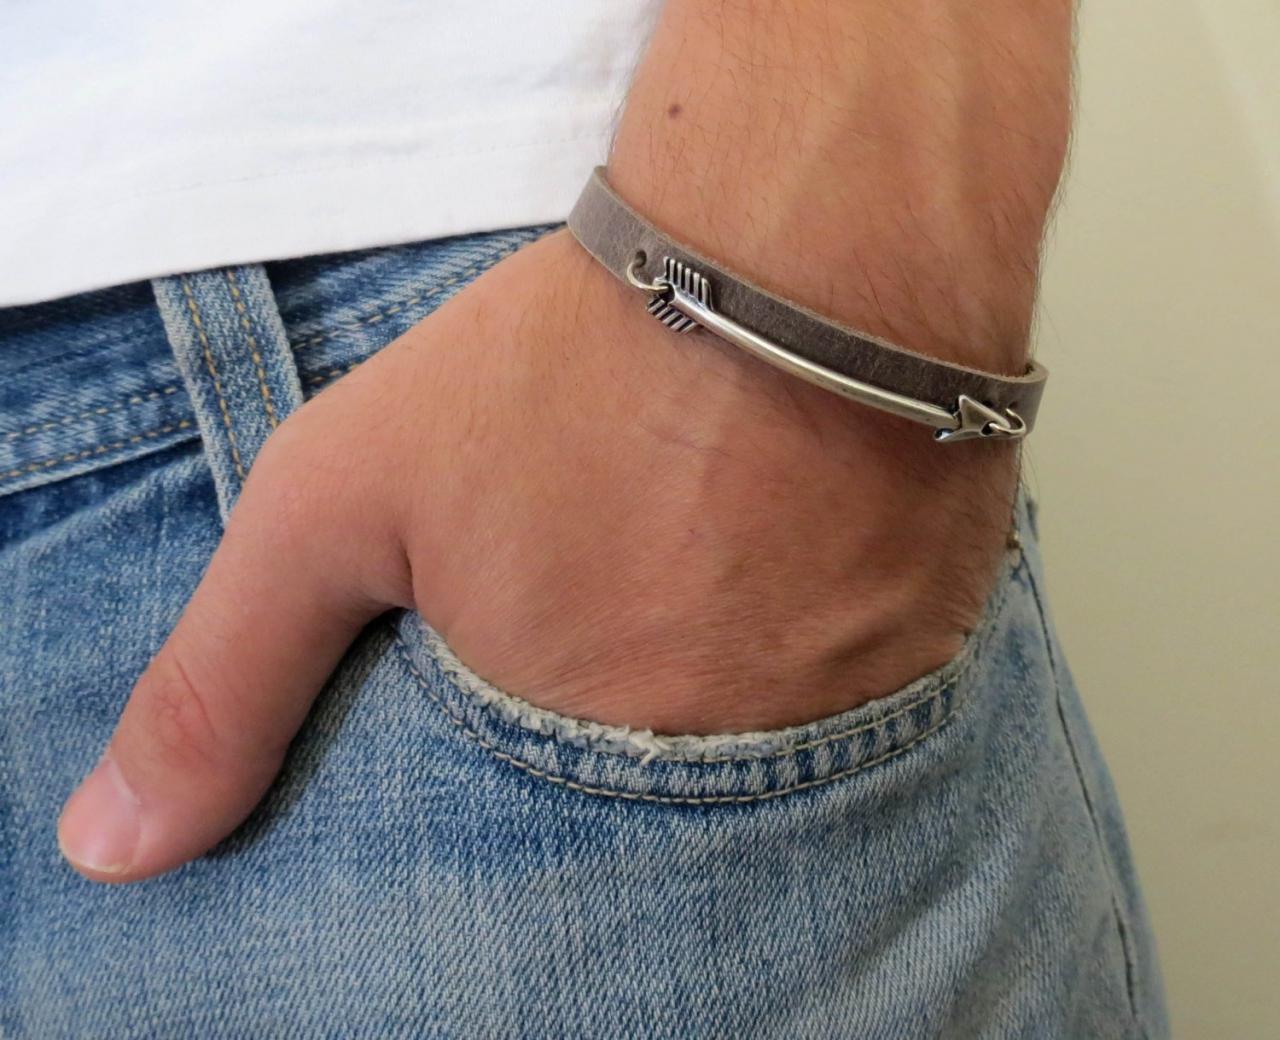 Men's Bracelet - Men's Leather Bracelet - Men's Jewelry - Men's Gift - Boyfrienf Gift - Husband Gift - Gift